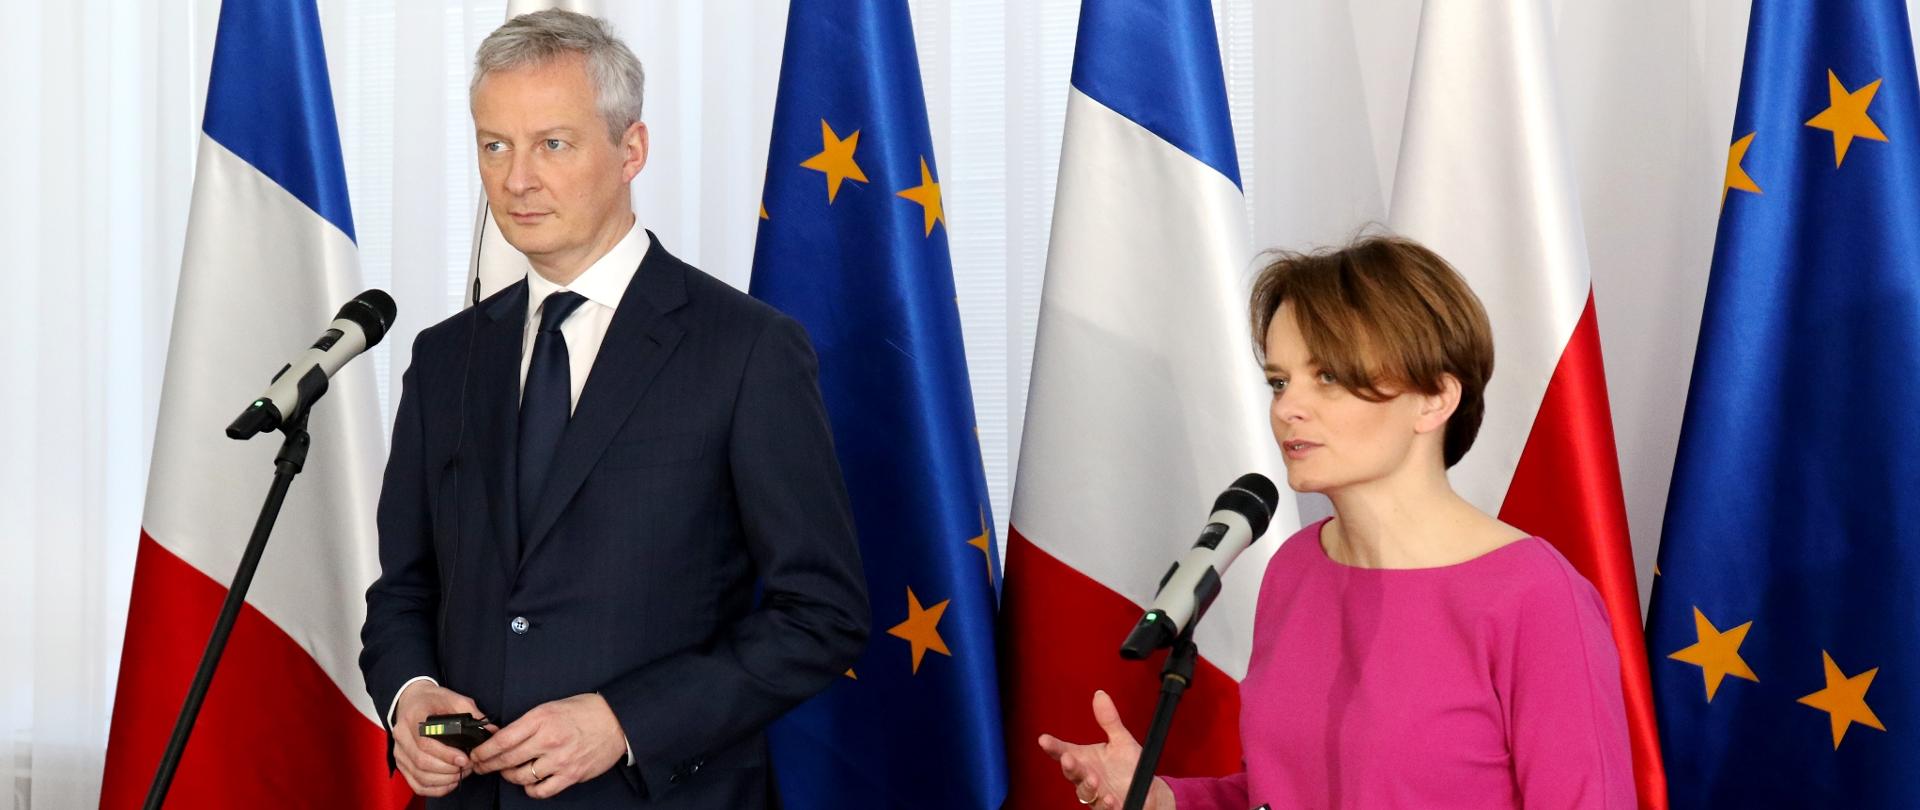 Ministrowie Bruno Le Maire i Jadwiga Emilewicz stoją na tle flag Francji, Polski i Unii Europejskiej